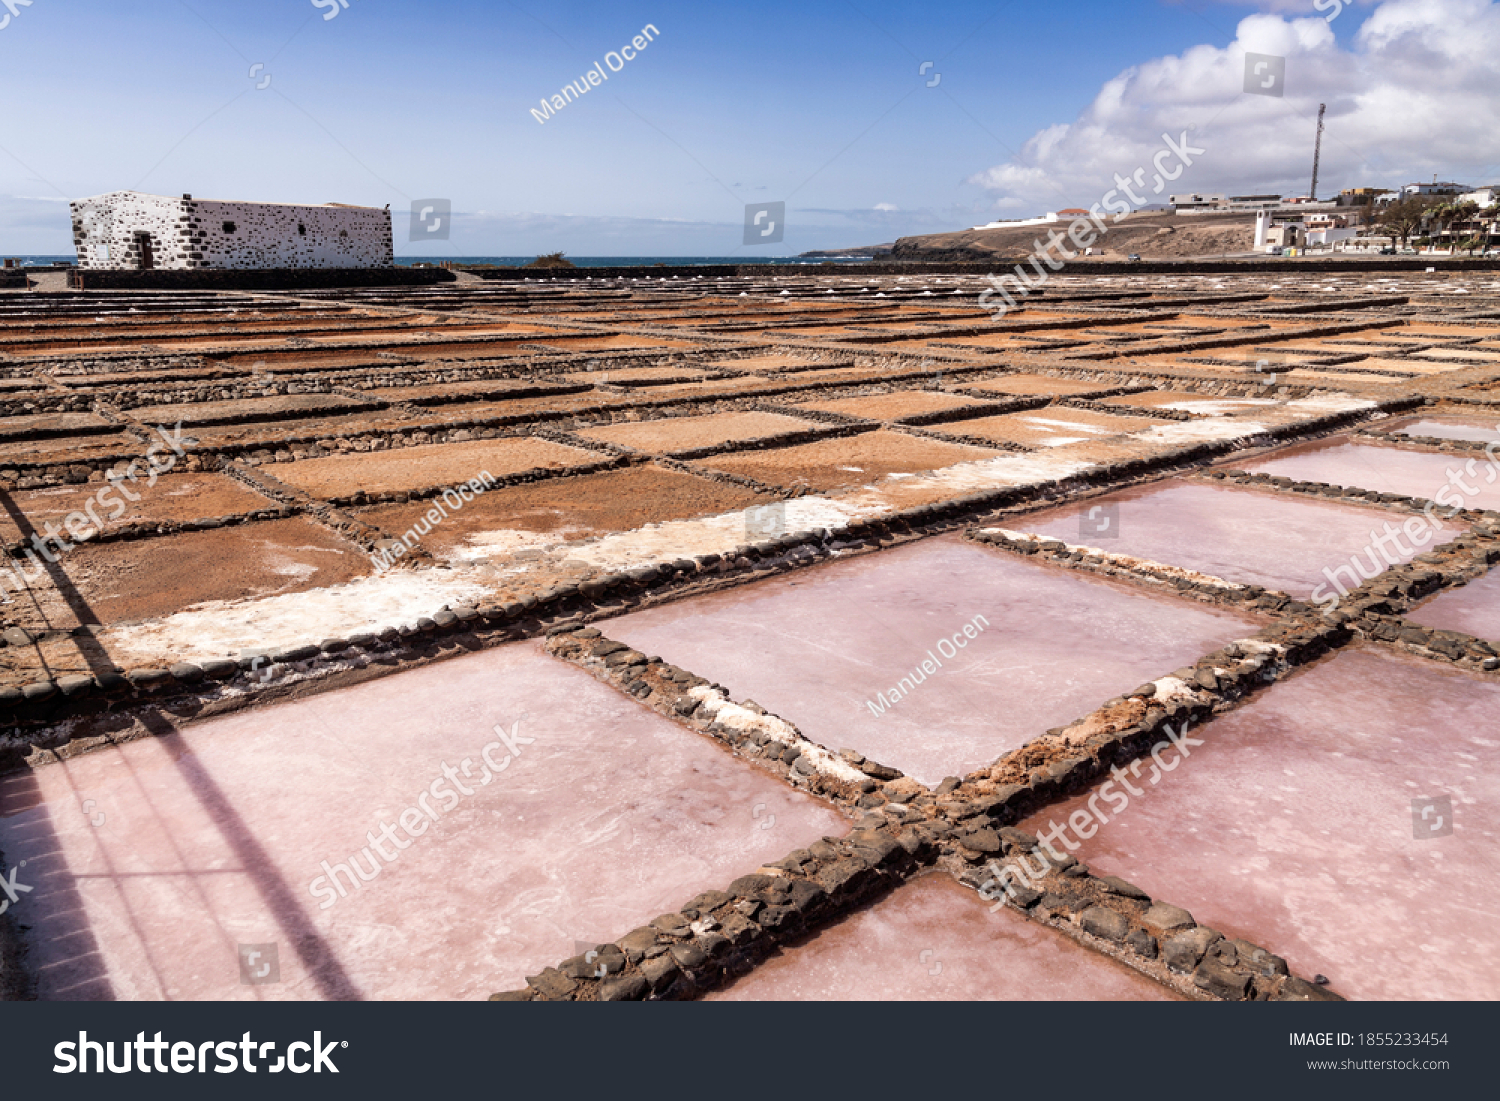 panoramic view of the salt deposits of Salinas del Carmen, Fuerteventura #1855233454